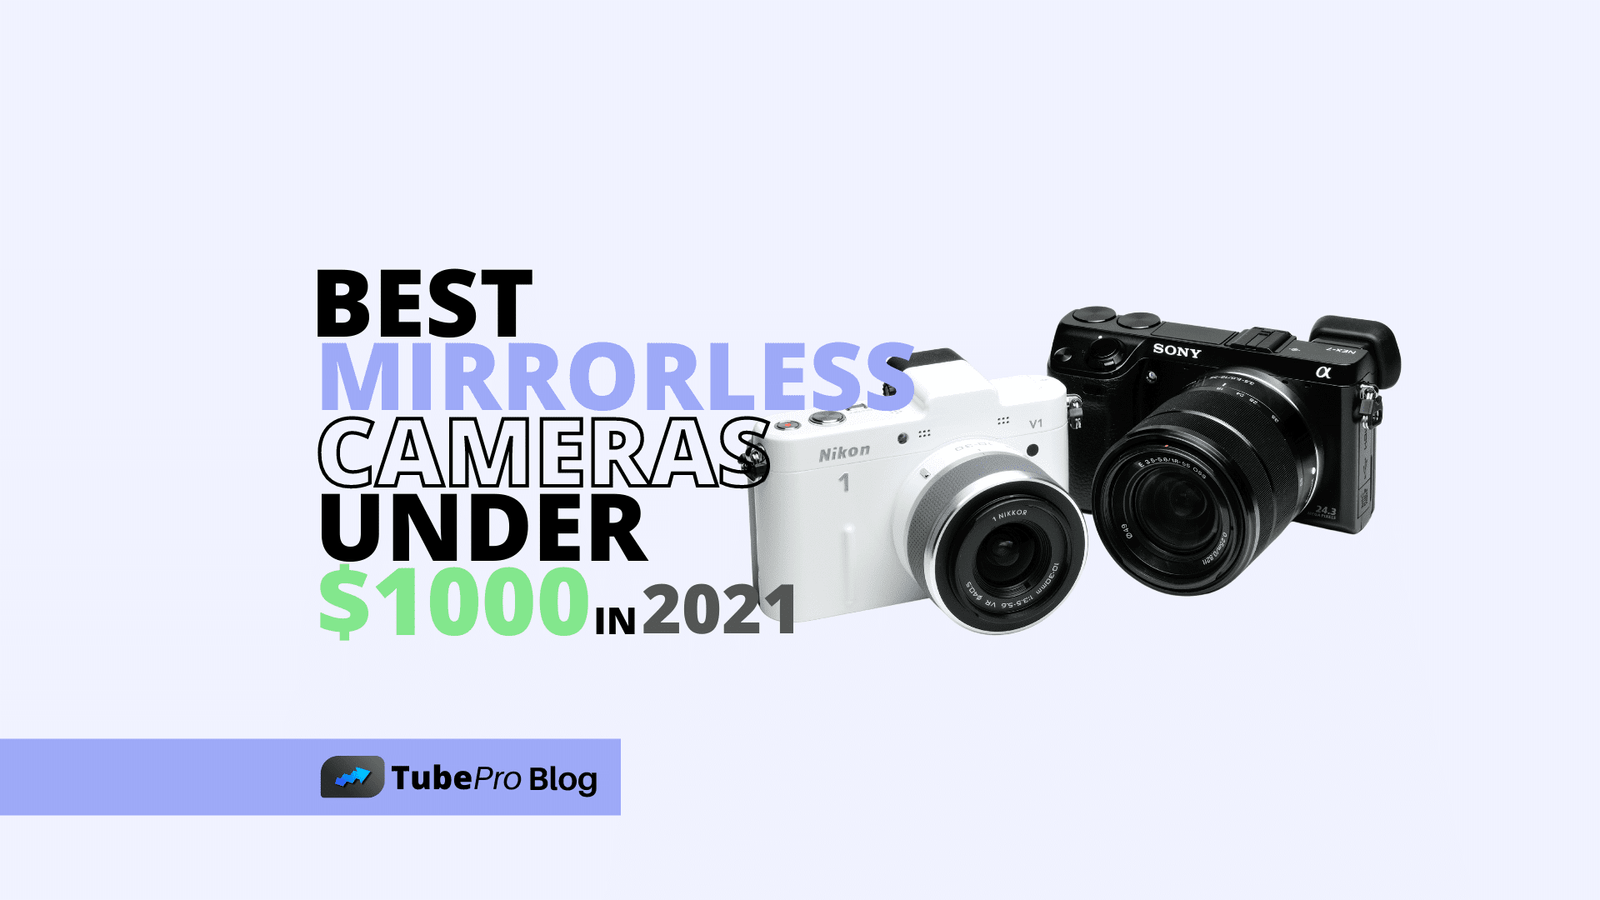 5 Best Mirrorless Cameras Under 1000 Dollars in 2021